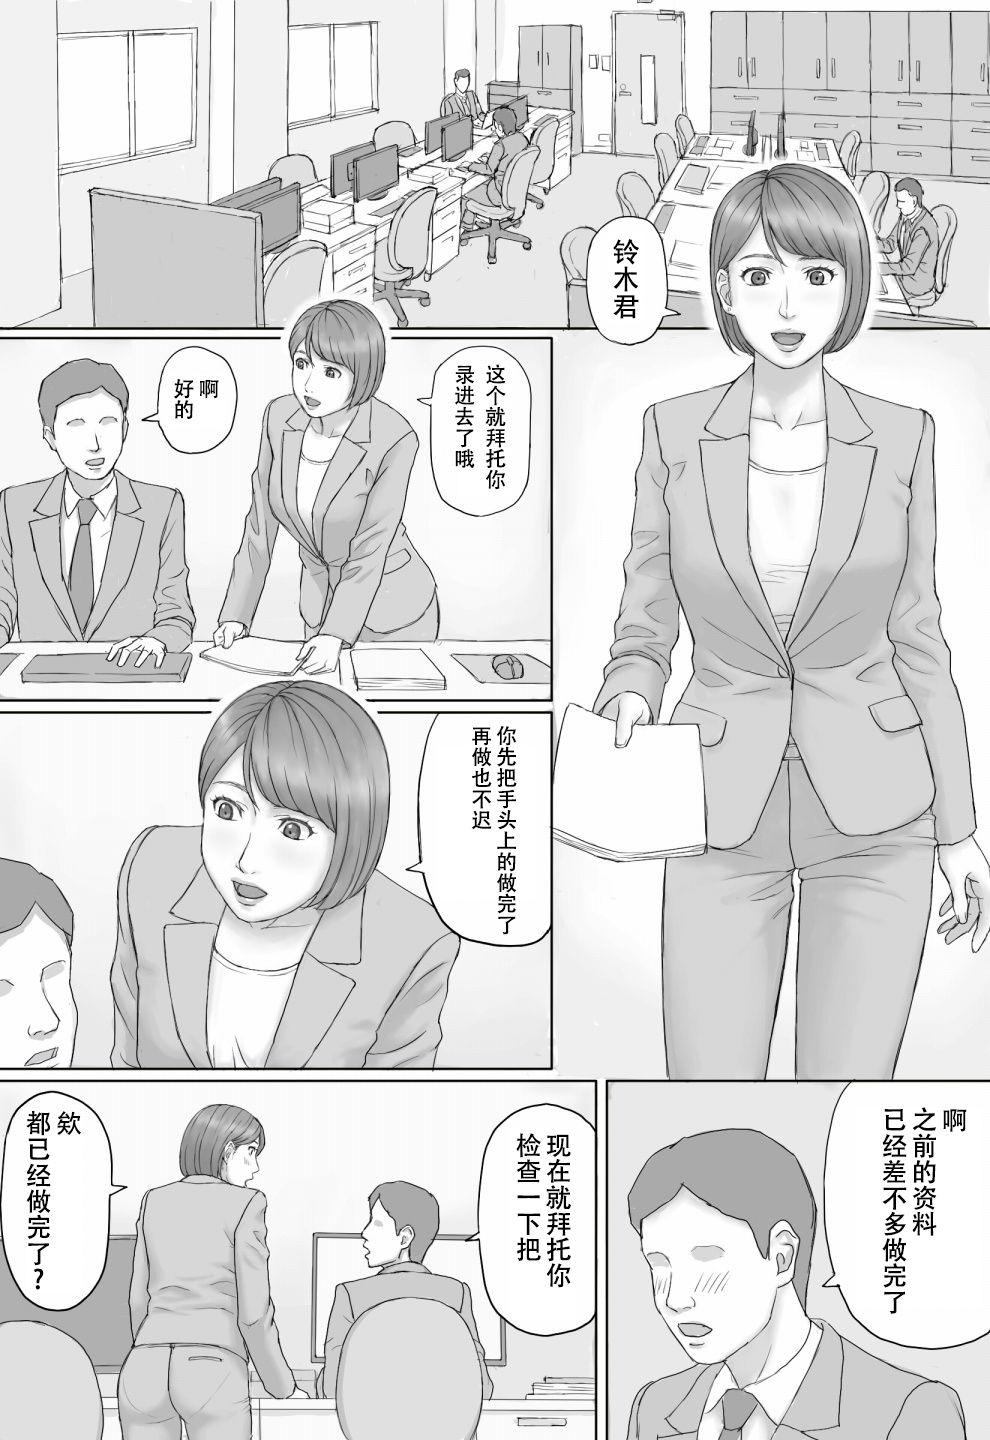 Passionate Moshimo no sekai - Original Rubia - Page 5